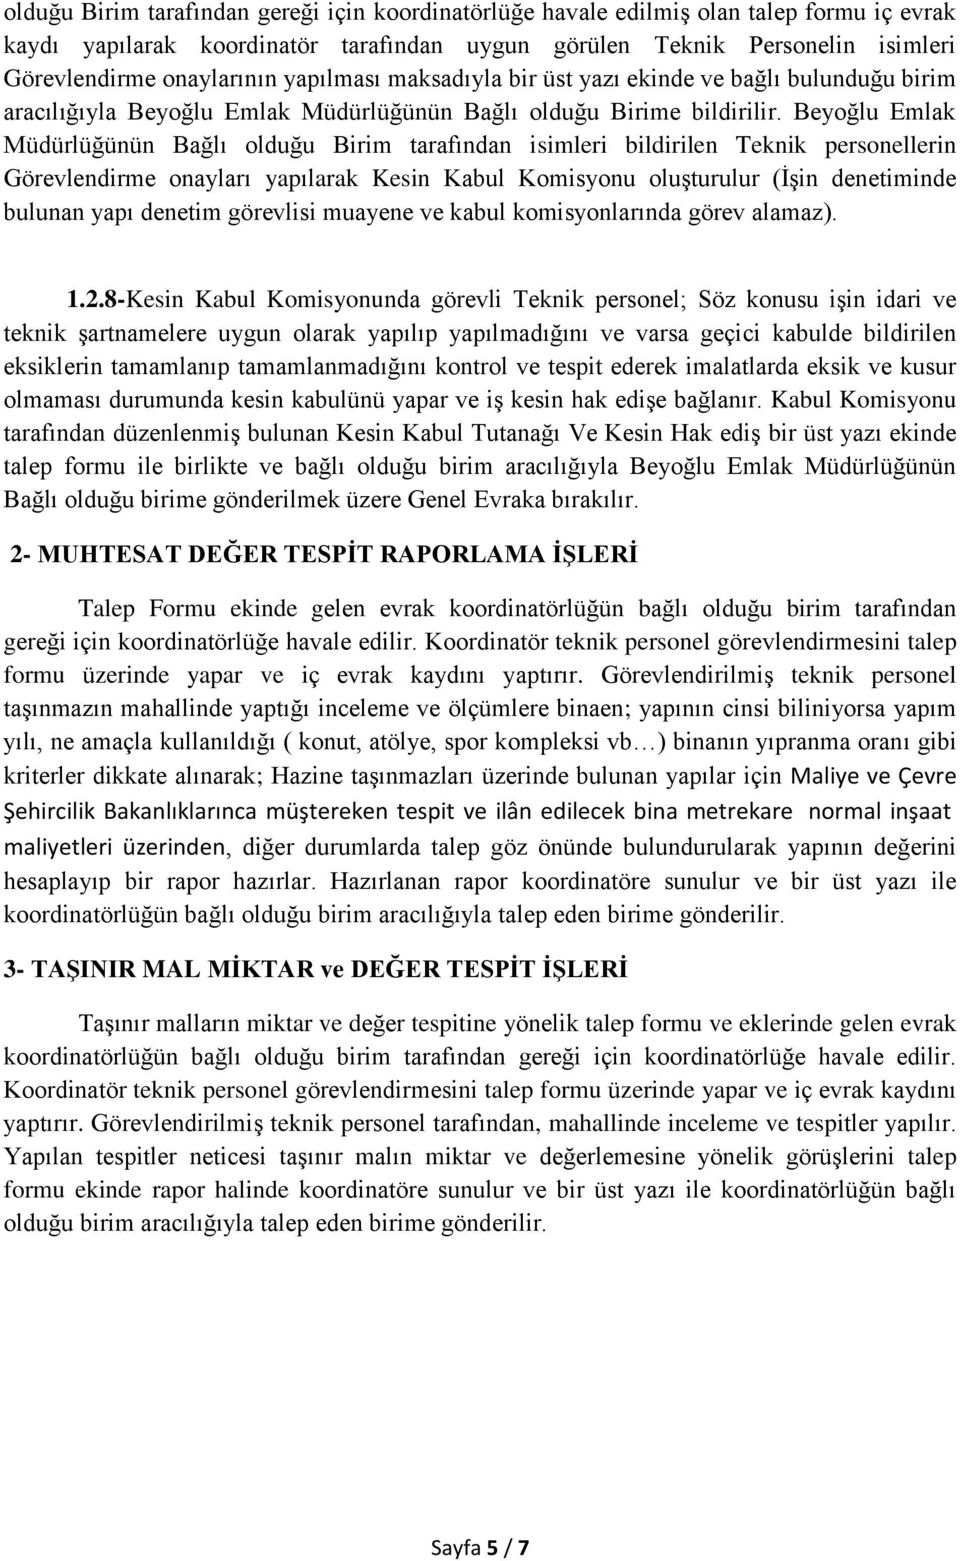 Beyoğlu Emlak Müdürlüğünün Bağlı olduğu Birim tarafından isimleri bildirilen Teknik personellerin Görevlendirme onayları yapılarak Kesin Kabul Komisyonu oluşturulur (İşin denetiminde bulunan yapı